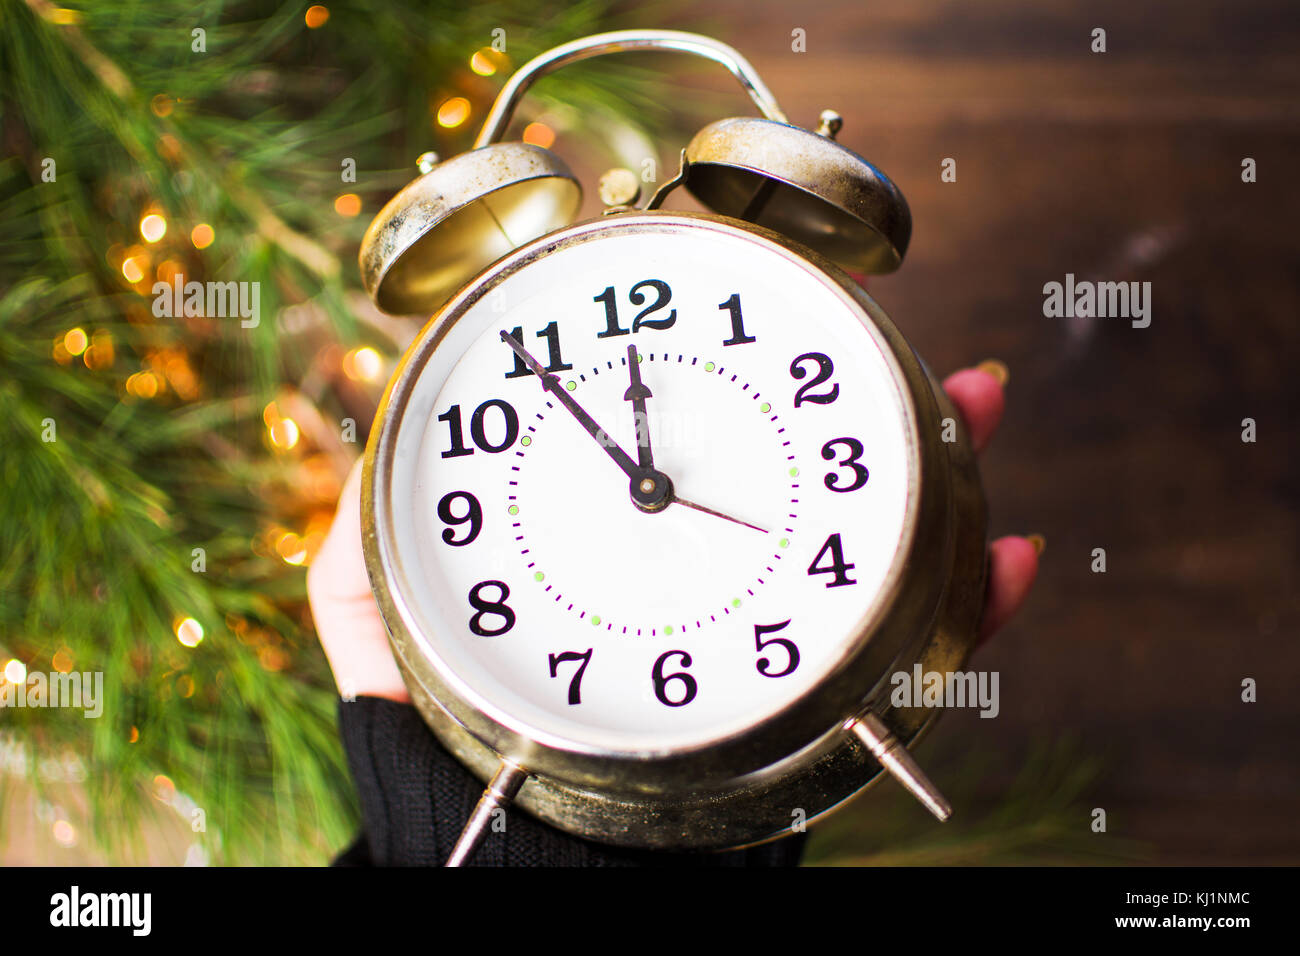 Mano azienda orologio vintage avvicina mezzanotte e la festa delle luci di Natale Foto Stock